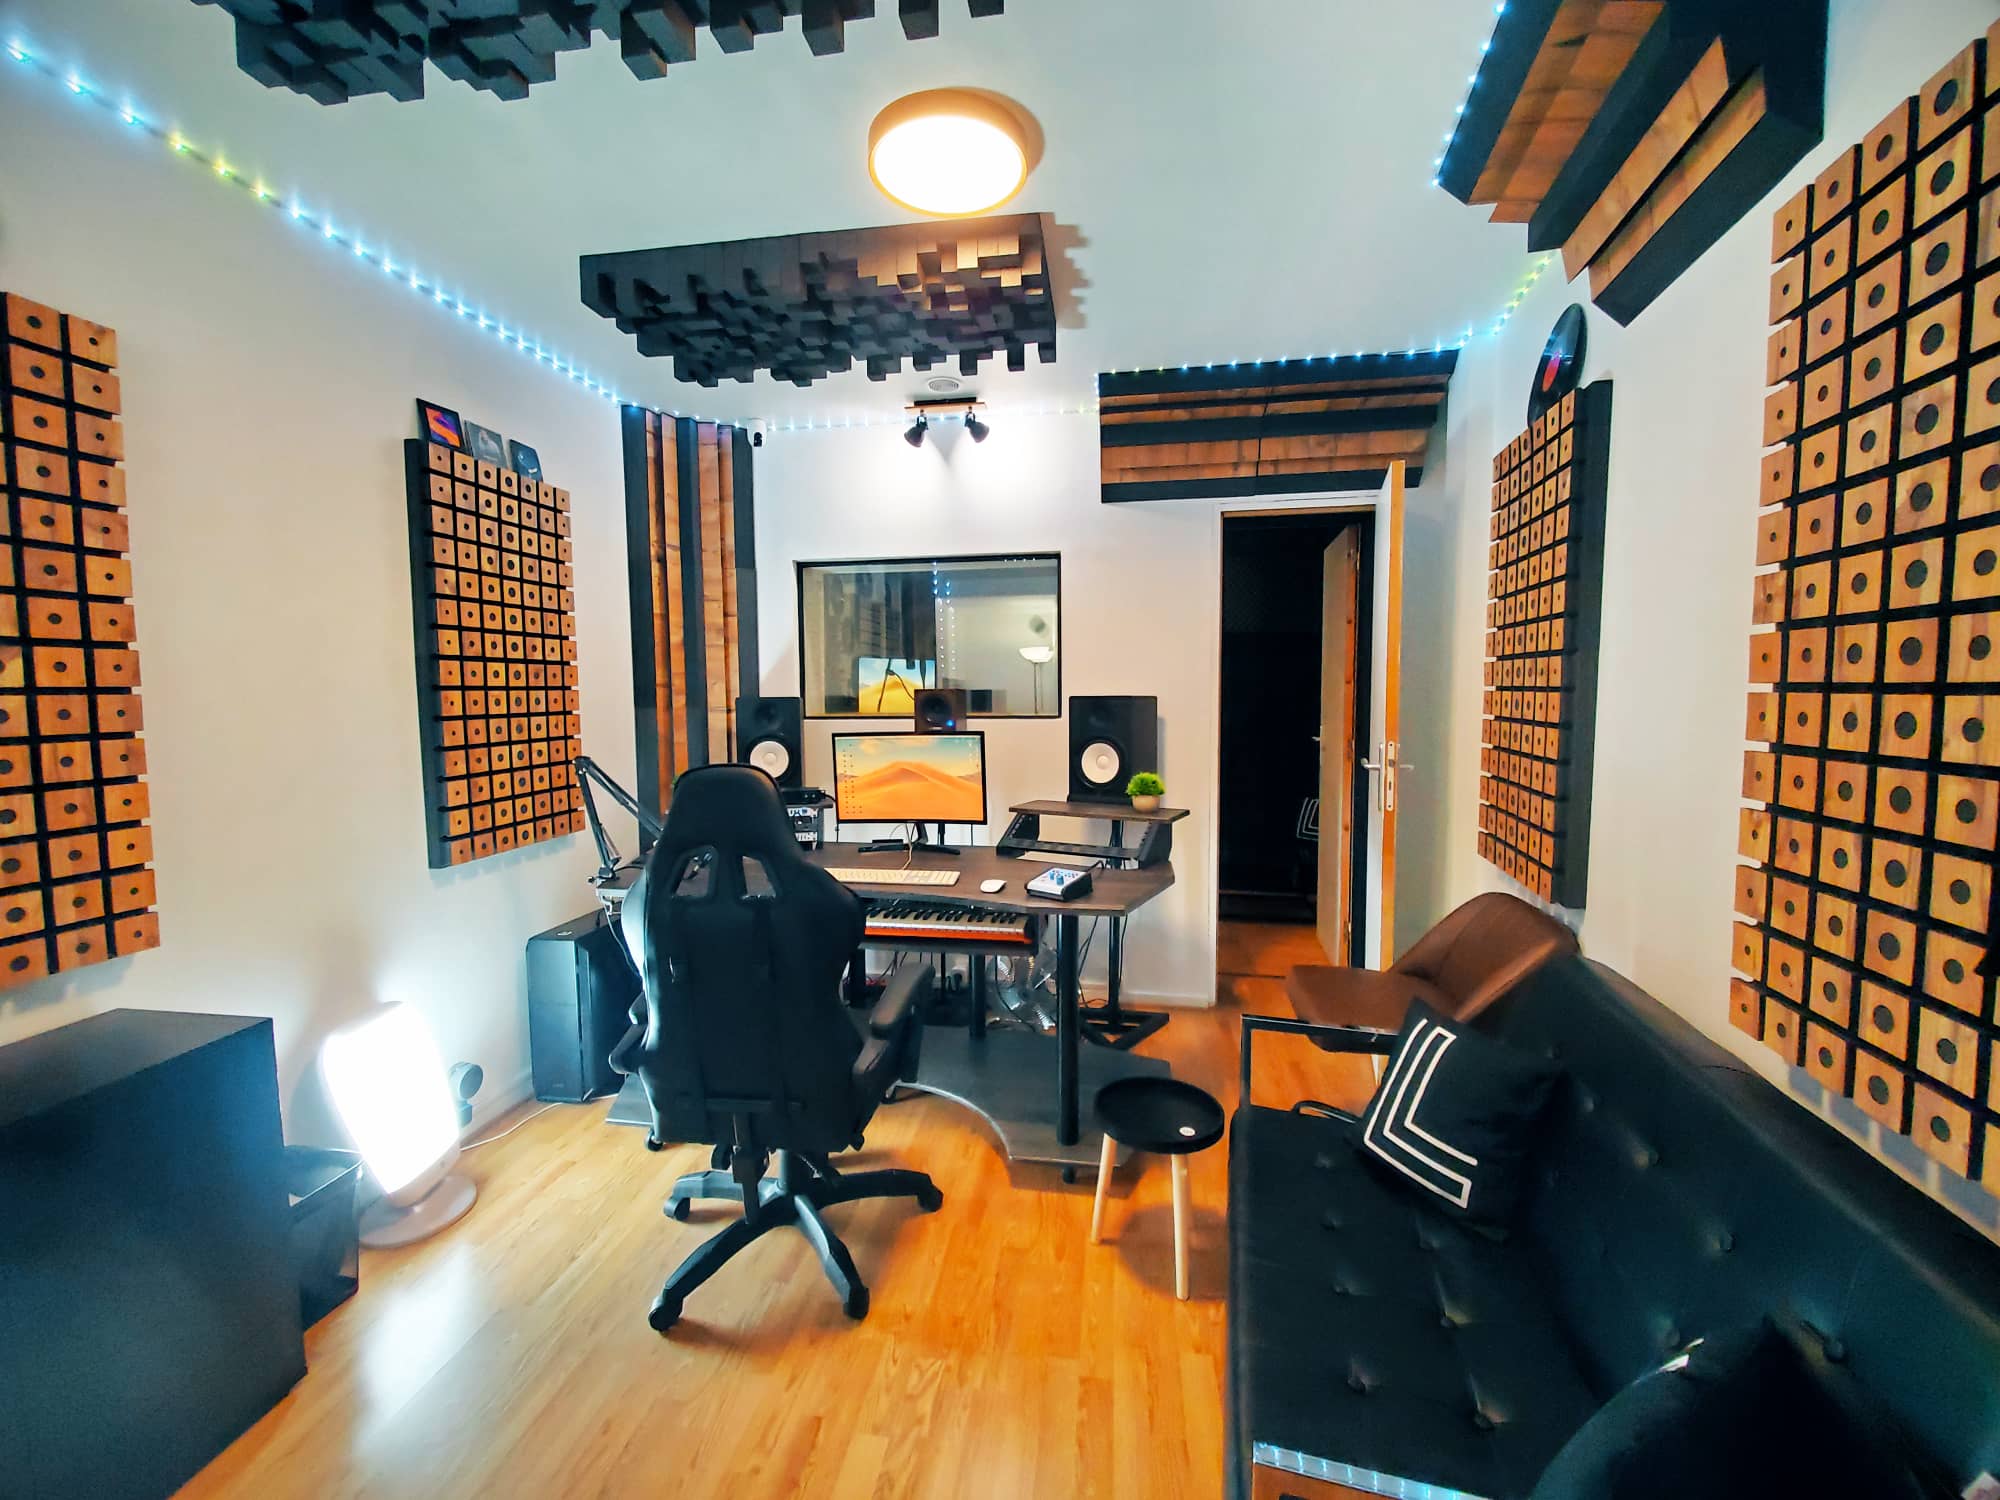 Traitement acoustique pour les studios d'enregistrement à domicile